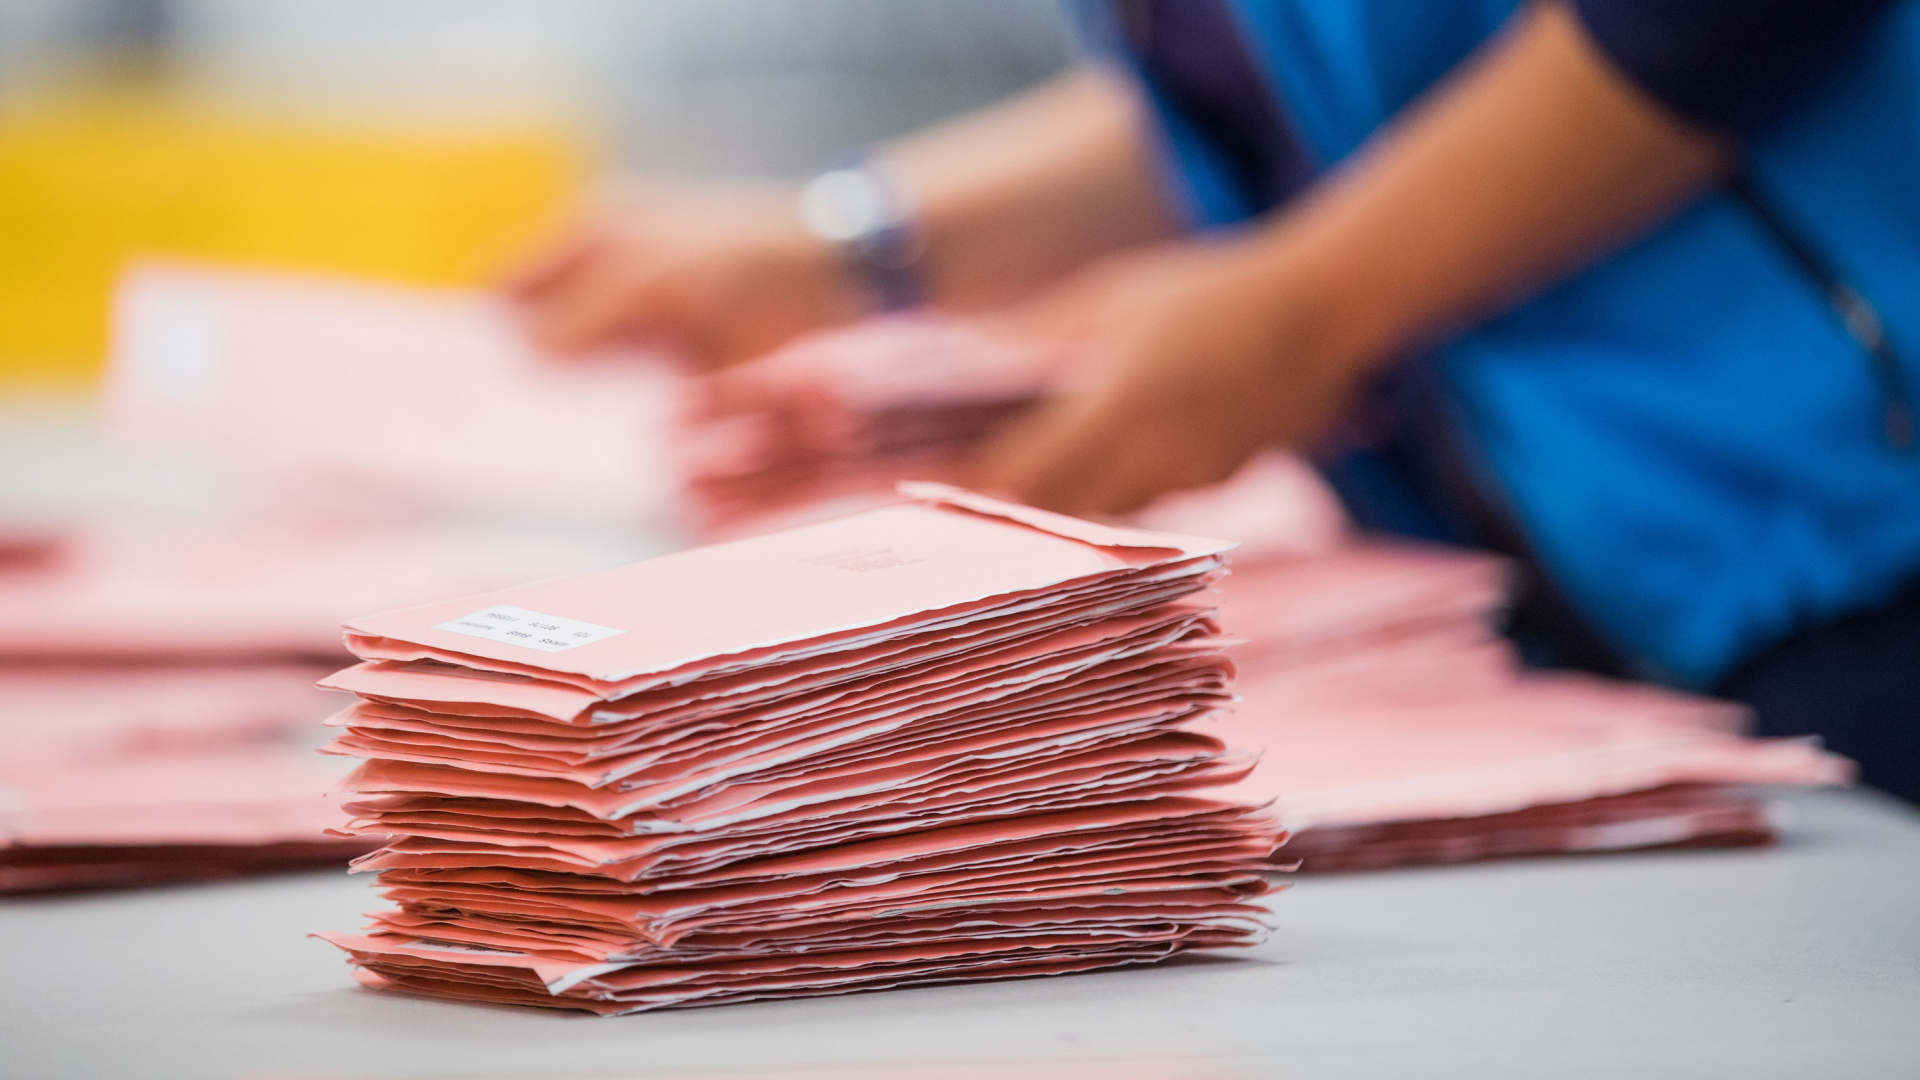 Wahlhelfer sortieren die roten Wahlbriefe mit den abgegebenen Stimmen für die Bundestagswahl 2017.